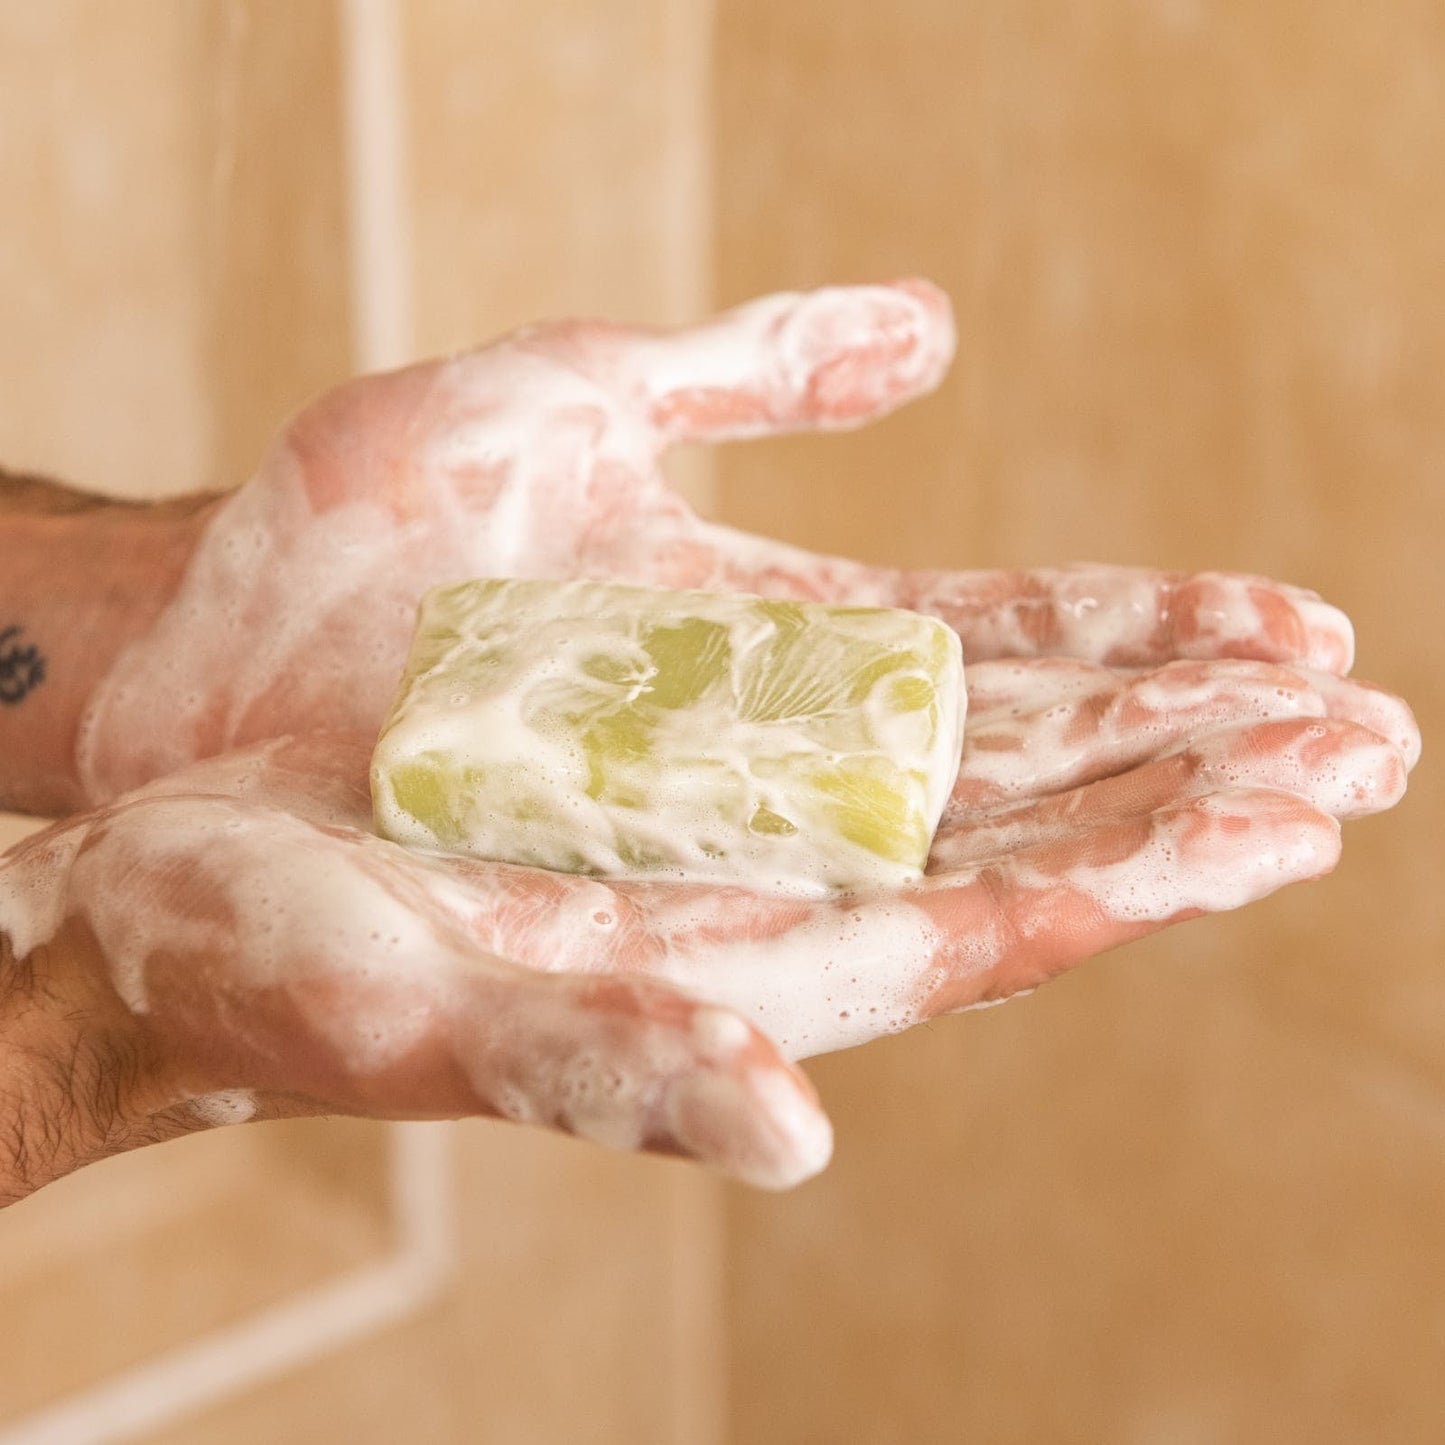 Shower Blocks Mint & Grapefruit Solid Shower Gel Bar - Plastic Free, Vegan & Natural